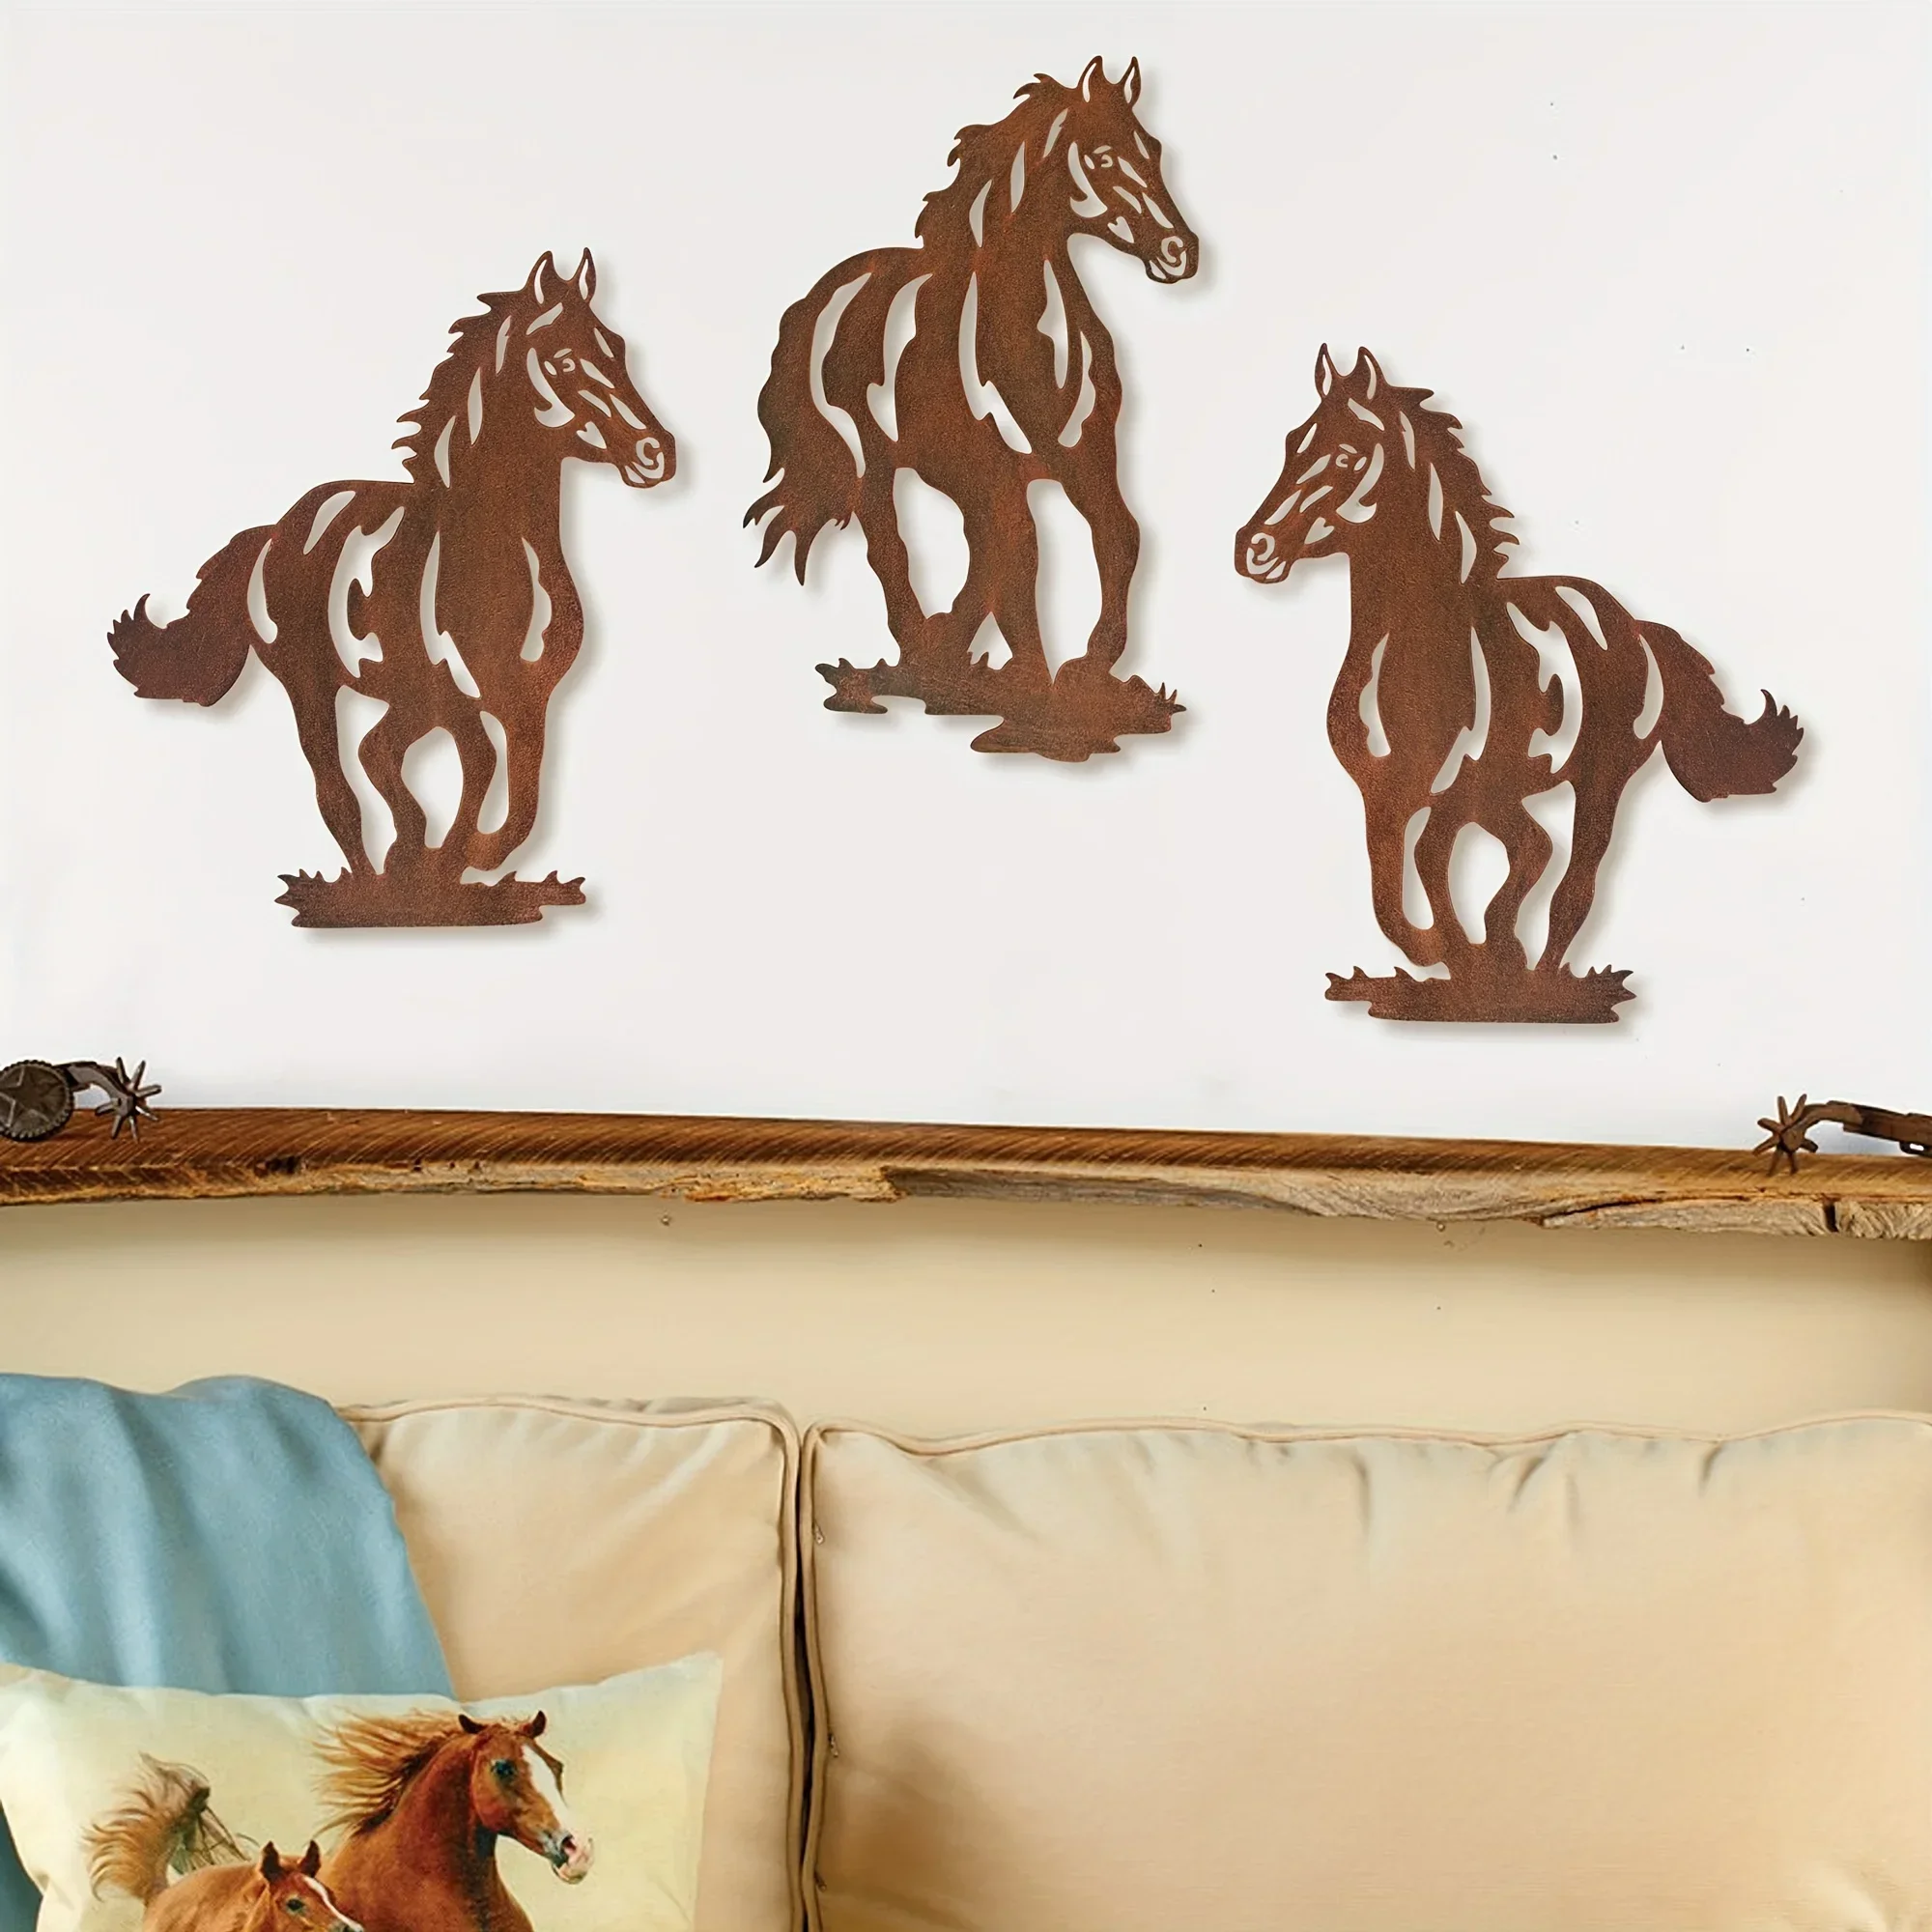 

Металлический Железный набор/3 шт., металлический домашний декор с лошадью, рустикальное Лаконичное украшение с лошадью в западном стиле, Настенное подвесное украшение для гостиной, спальни, ванной комнаты